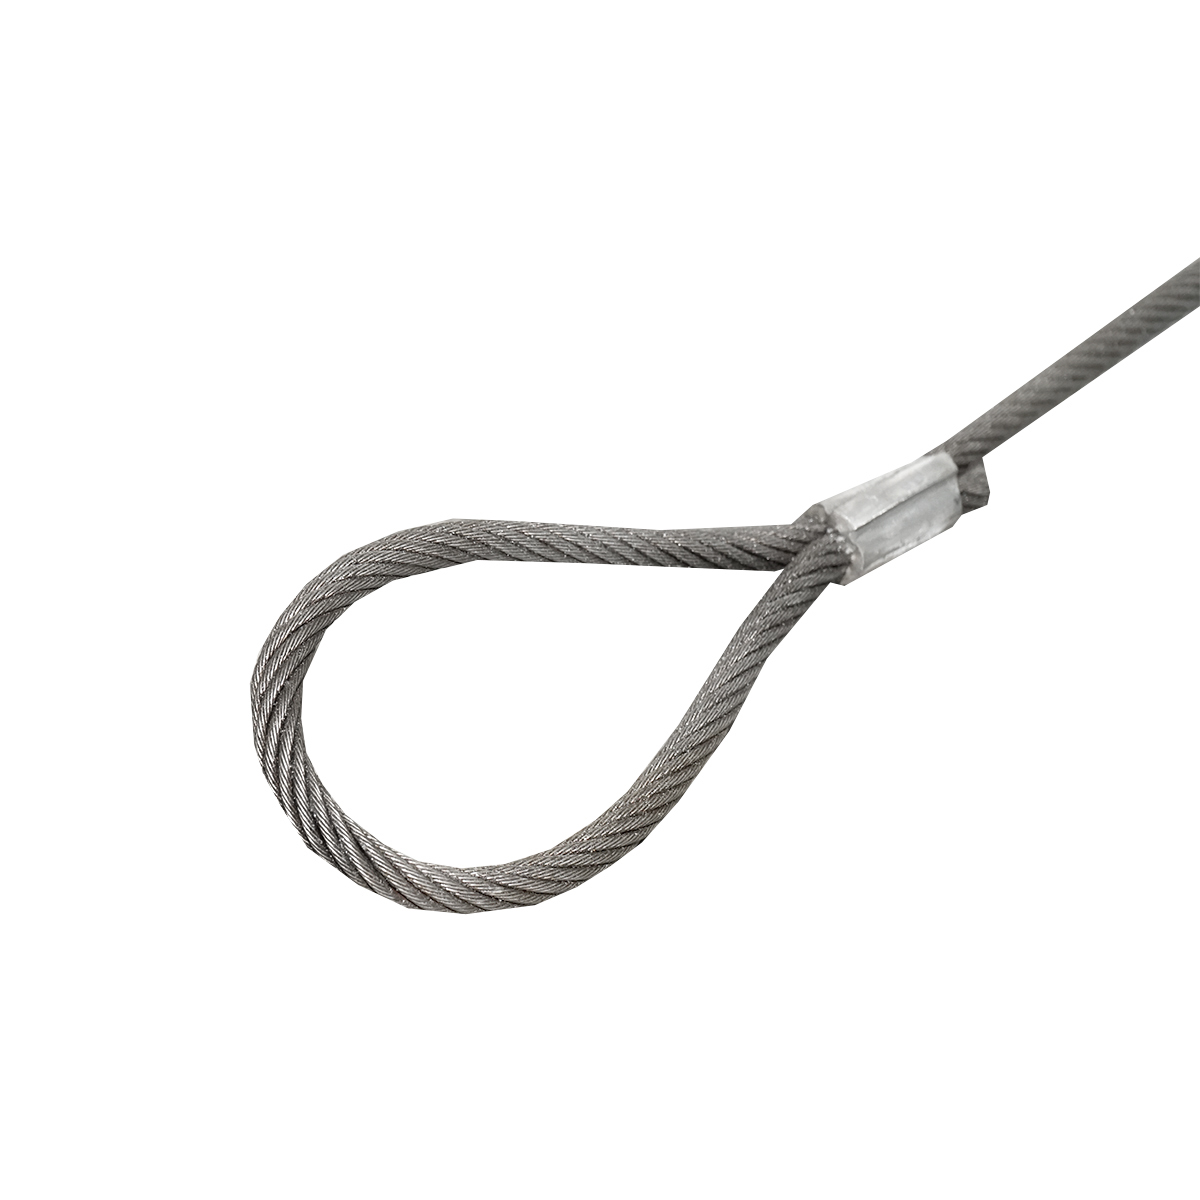 Cablu/sufa troliu din otel cu grosime 12mm si lungime 4m cu inele pentru tractat sau ridicat